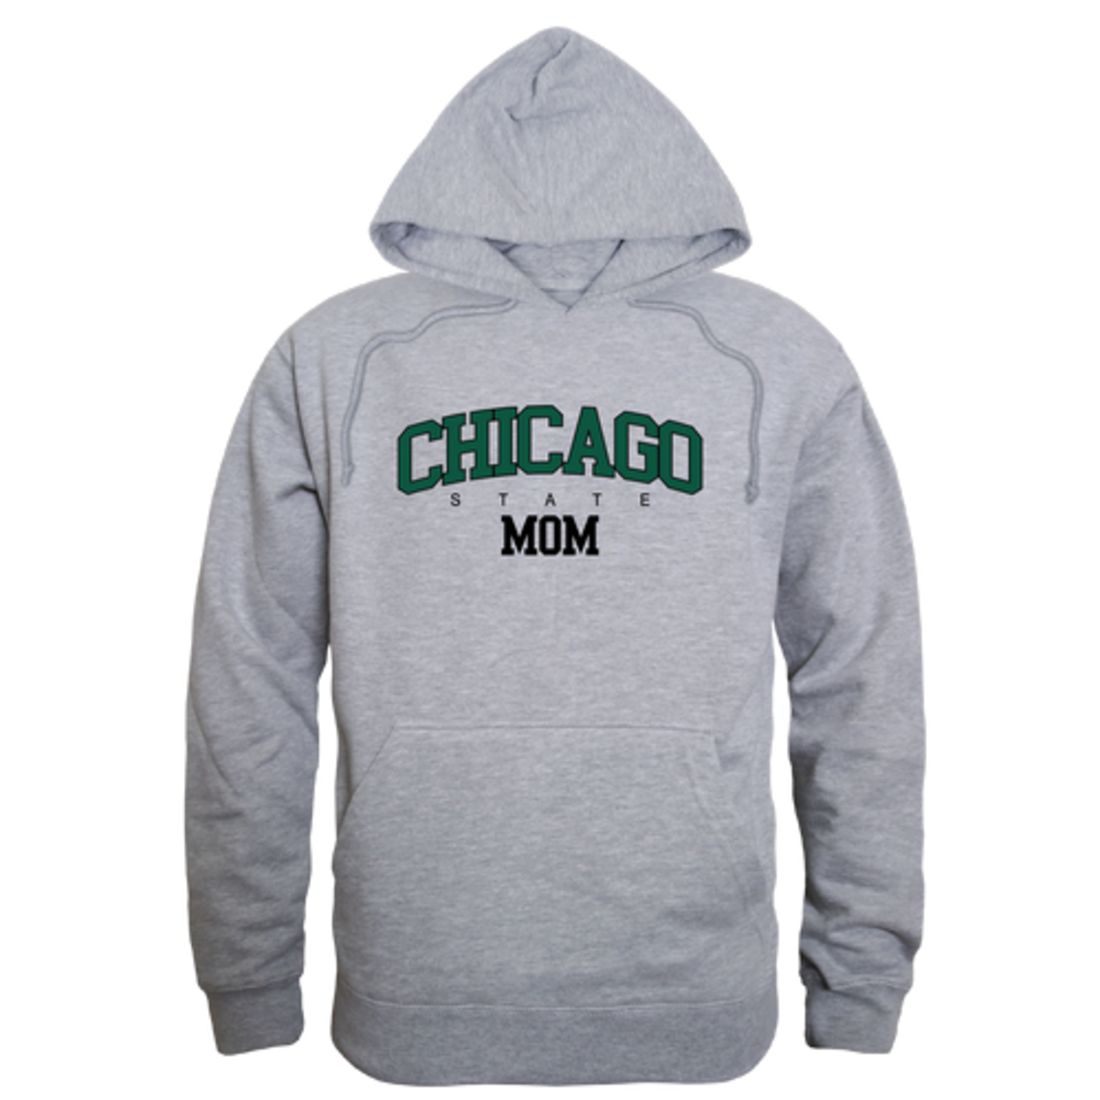 Chicago State University Cougars Mom Fleece Hoodie Sweatshirts